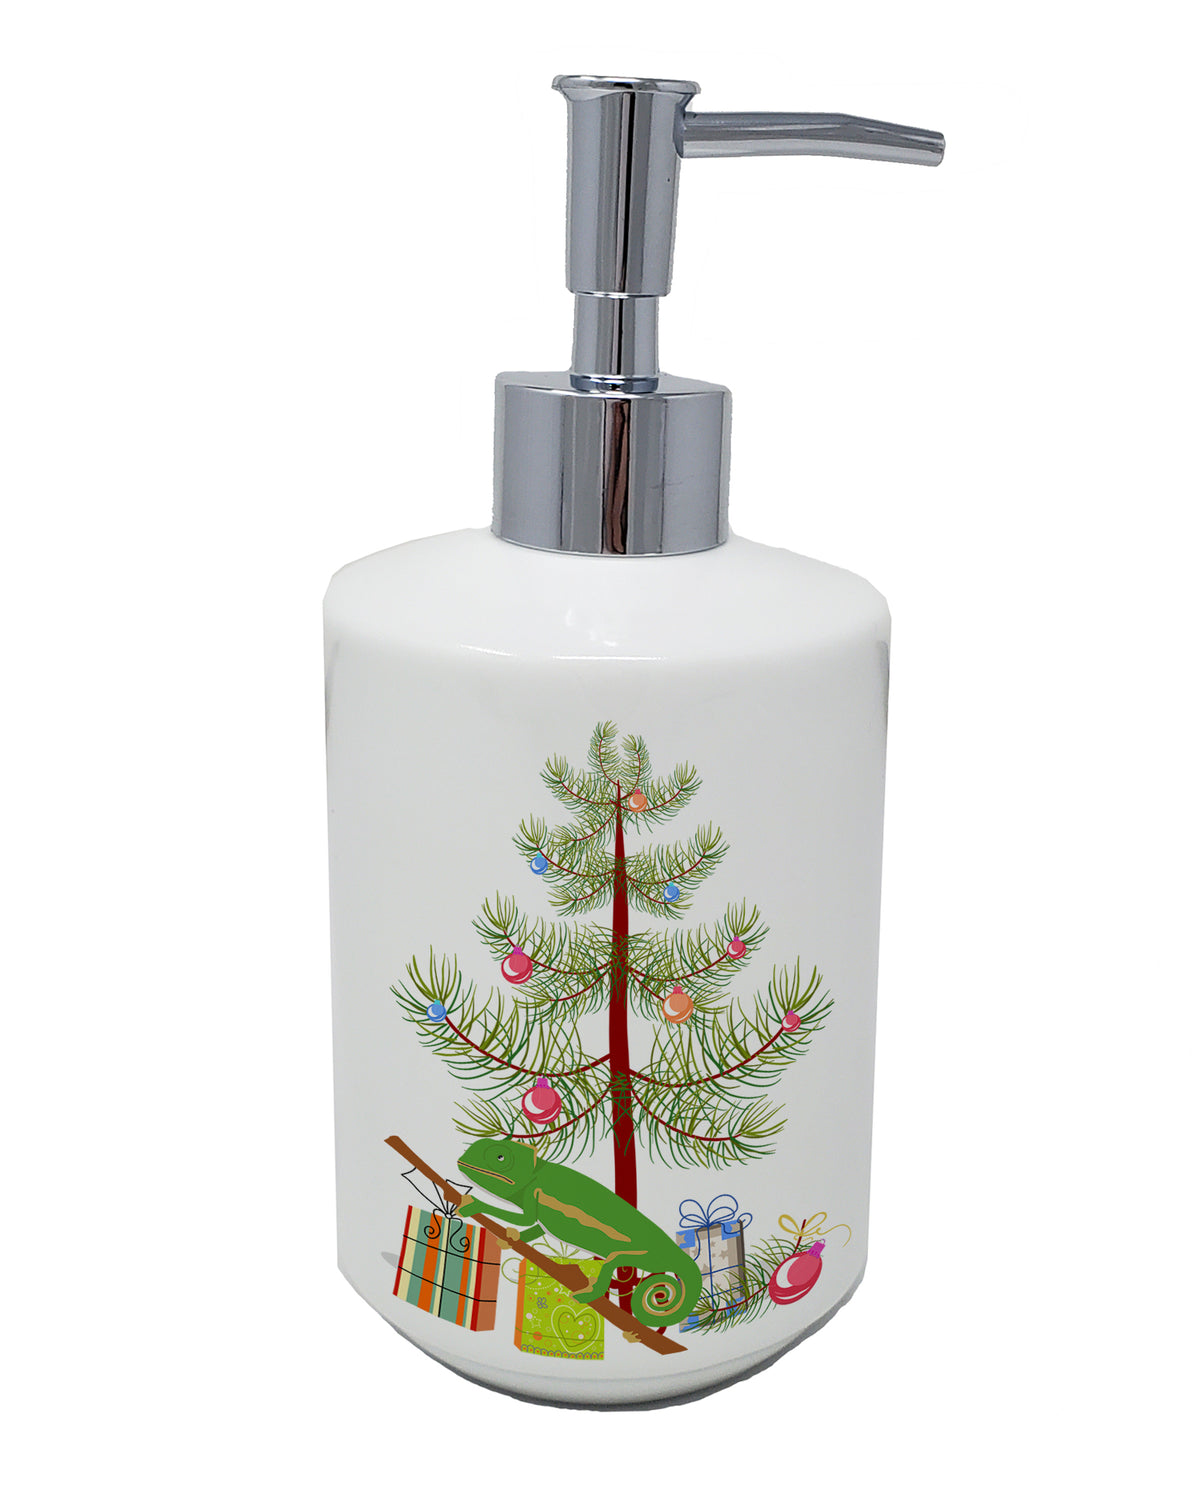 Buy this Chameleon Merry Christmas Ceramic Soap Dispenser